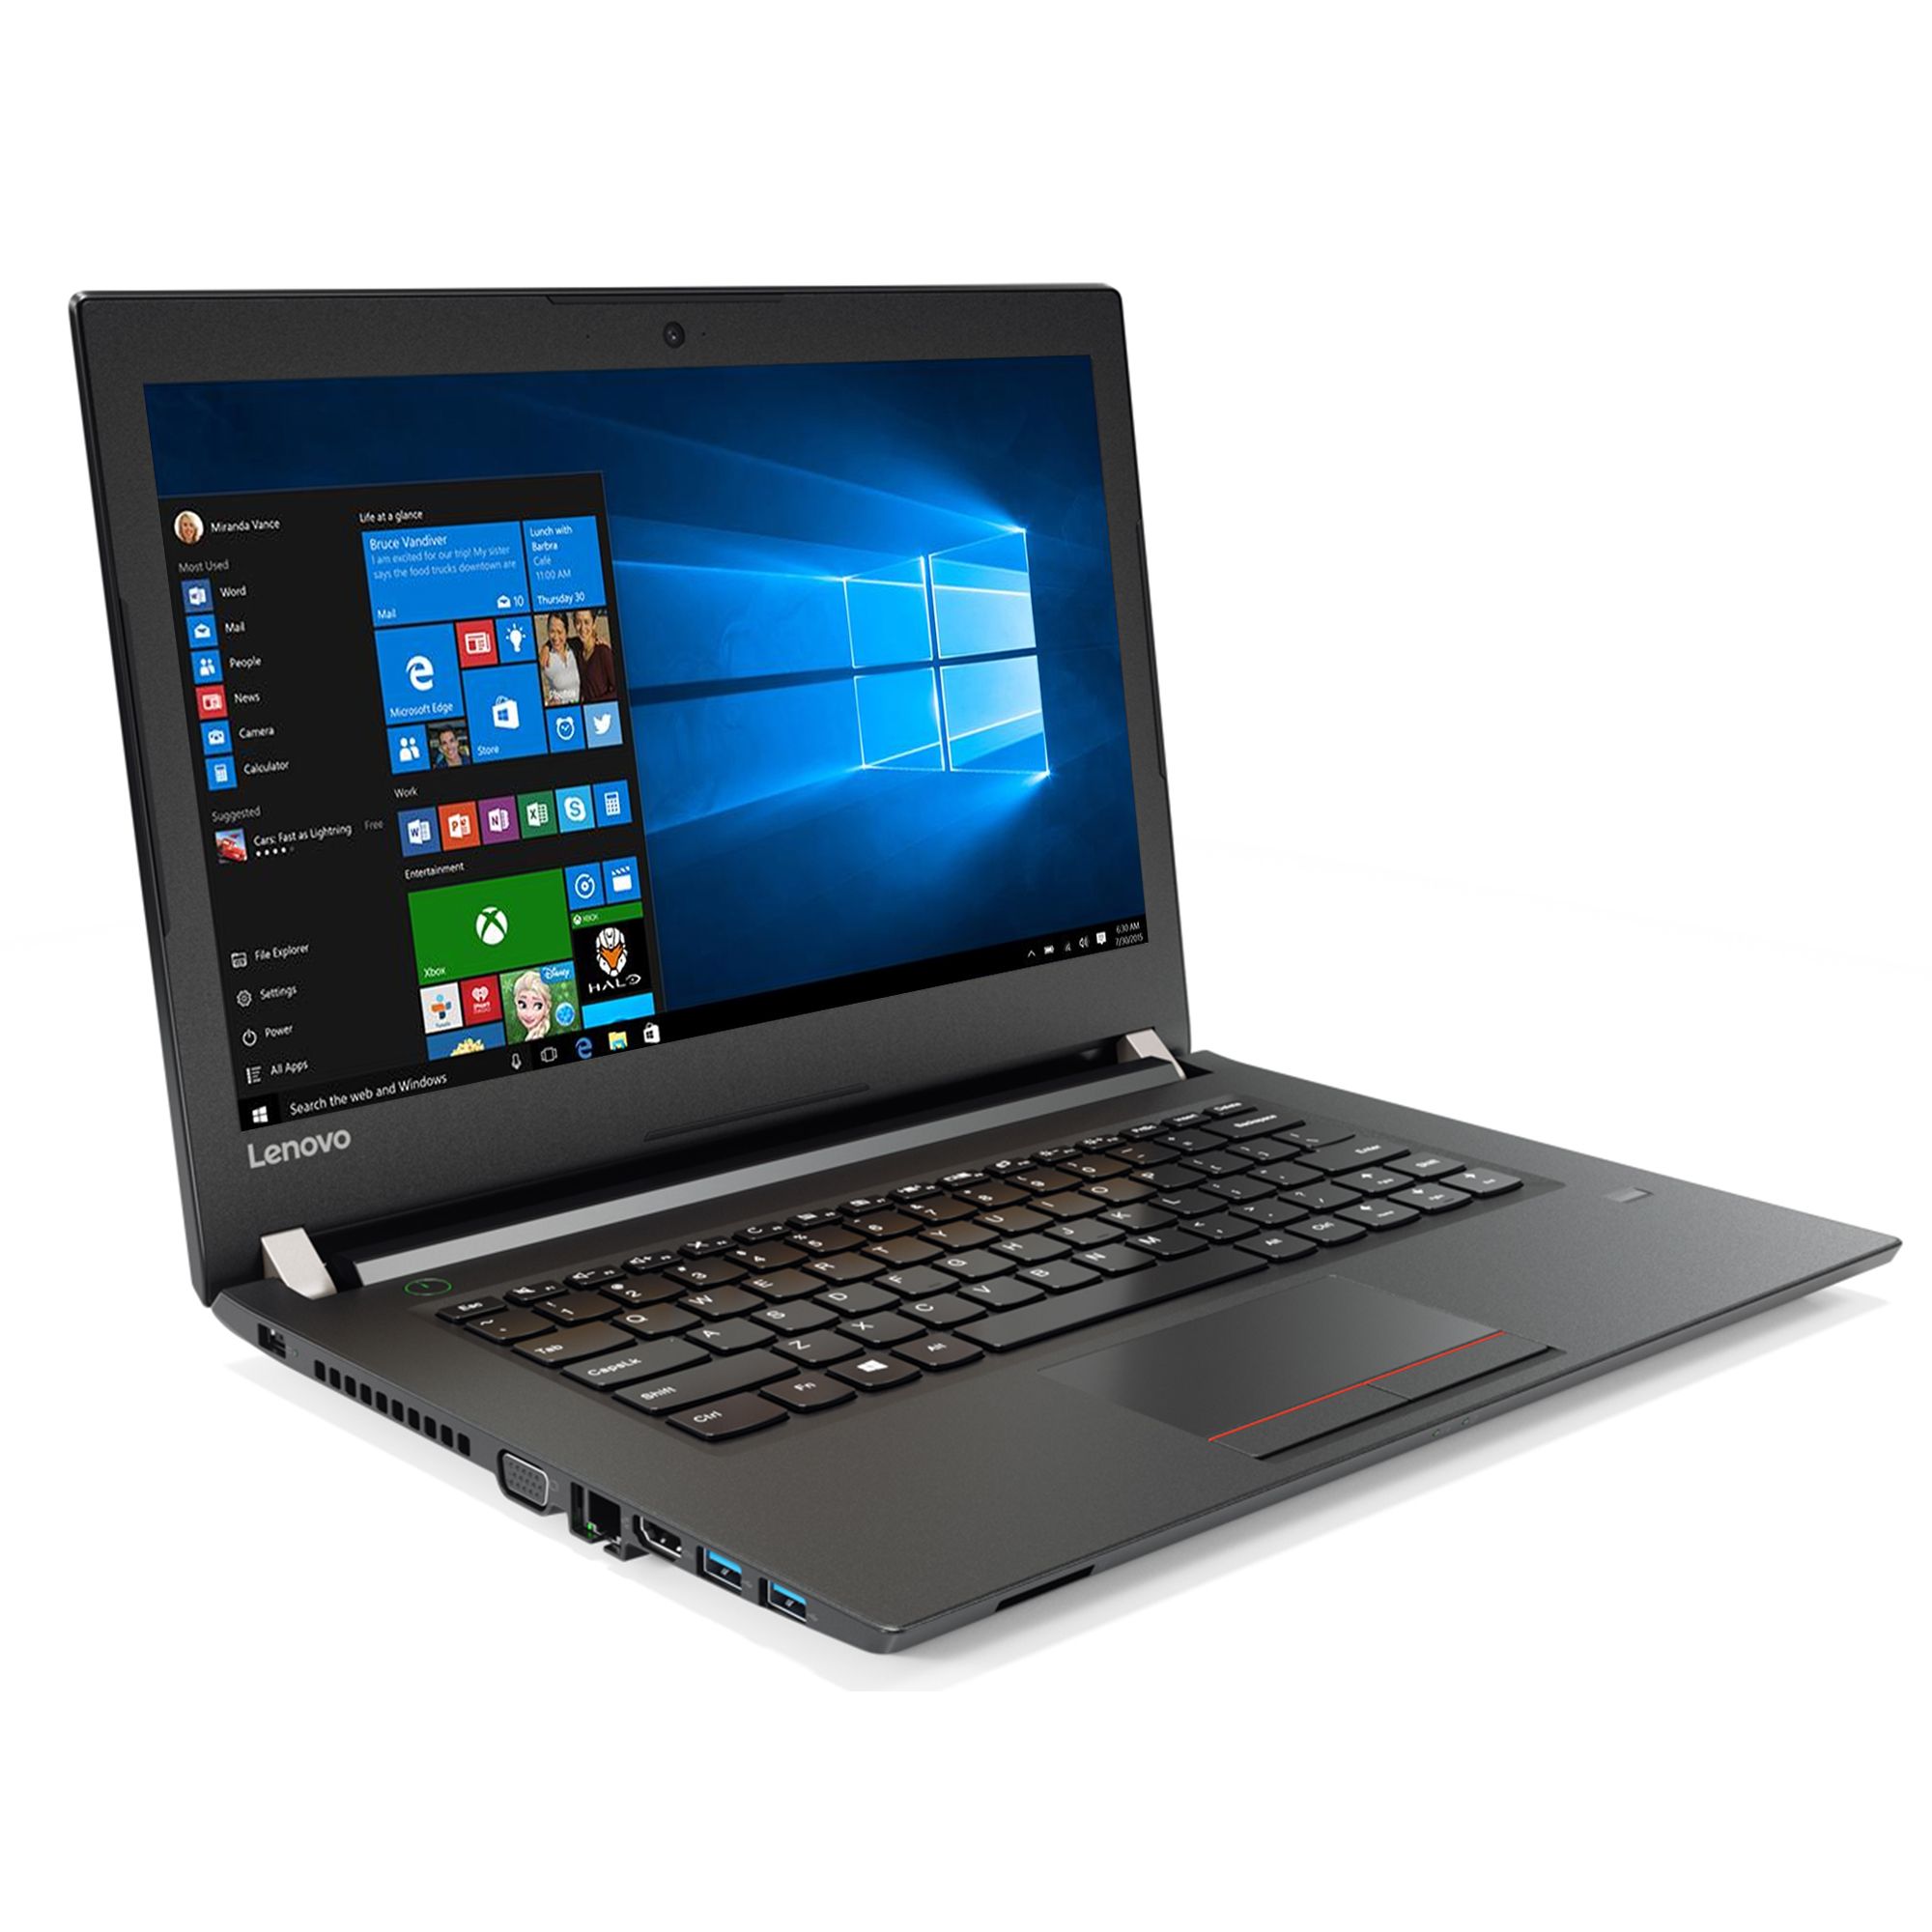 Laptop Lenovo V510, Intel Core i3-6006U 2.00GHz, 4GB DDR4, 120GB SSD, DVD-RW, 15.6 Inch, Webcam, Tastatura Numerica